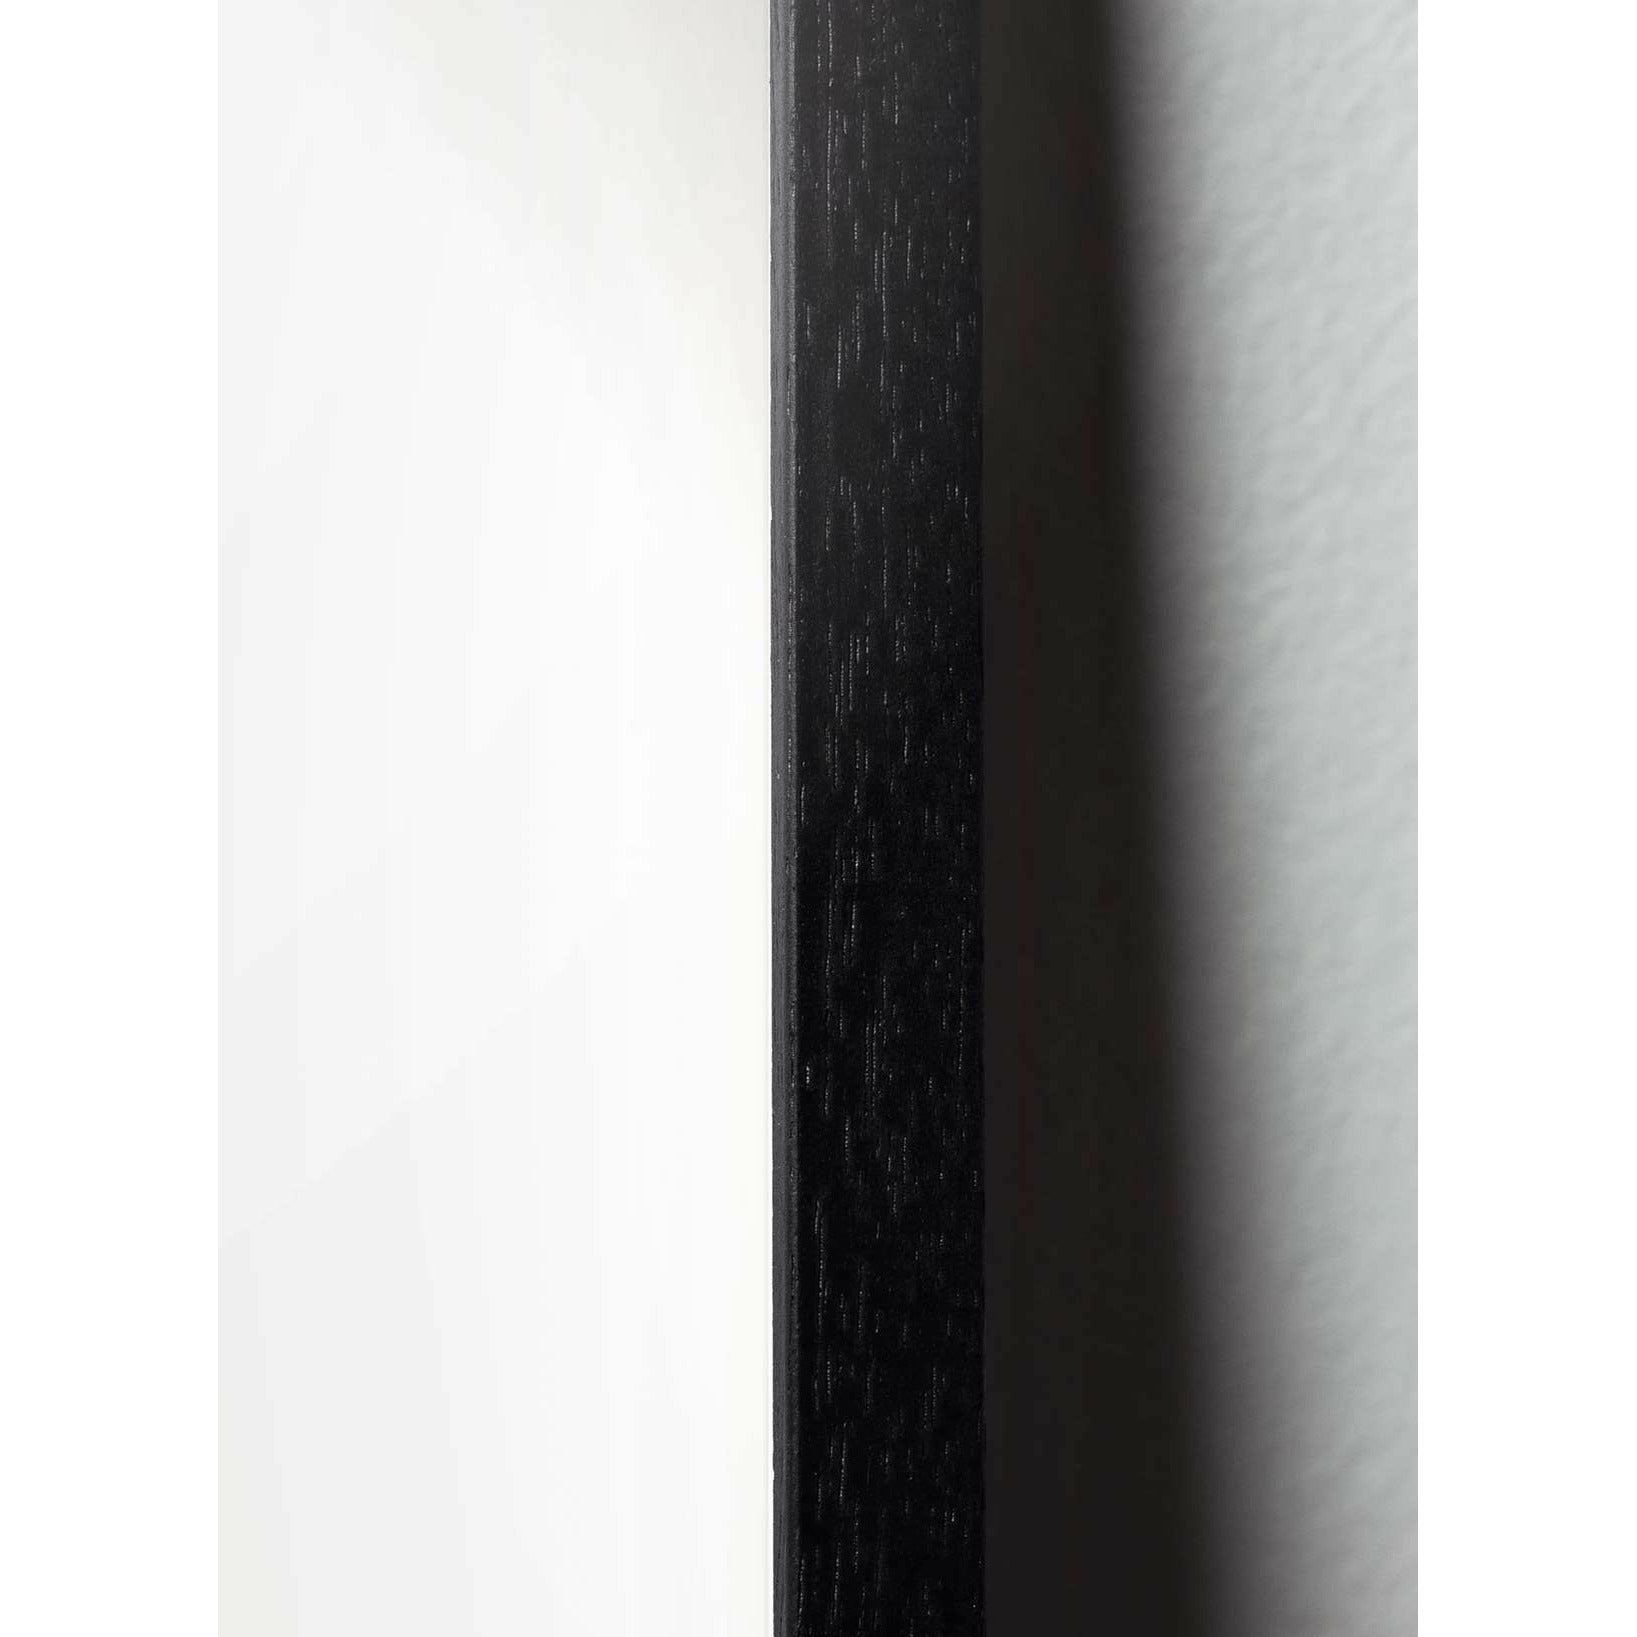 Pomysły plakat linii mrówek, rama w czarnym lakierowanym drewnie 70x100 cm, niebieskie tło